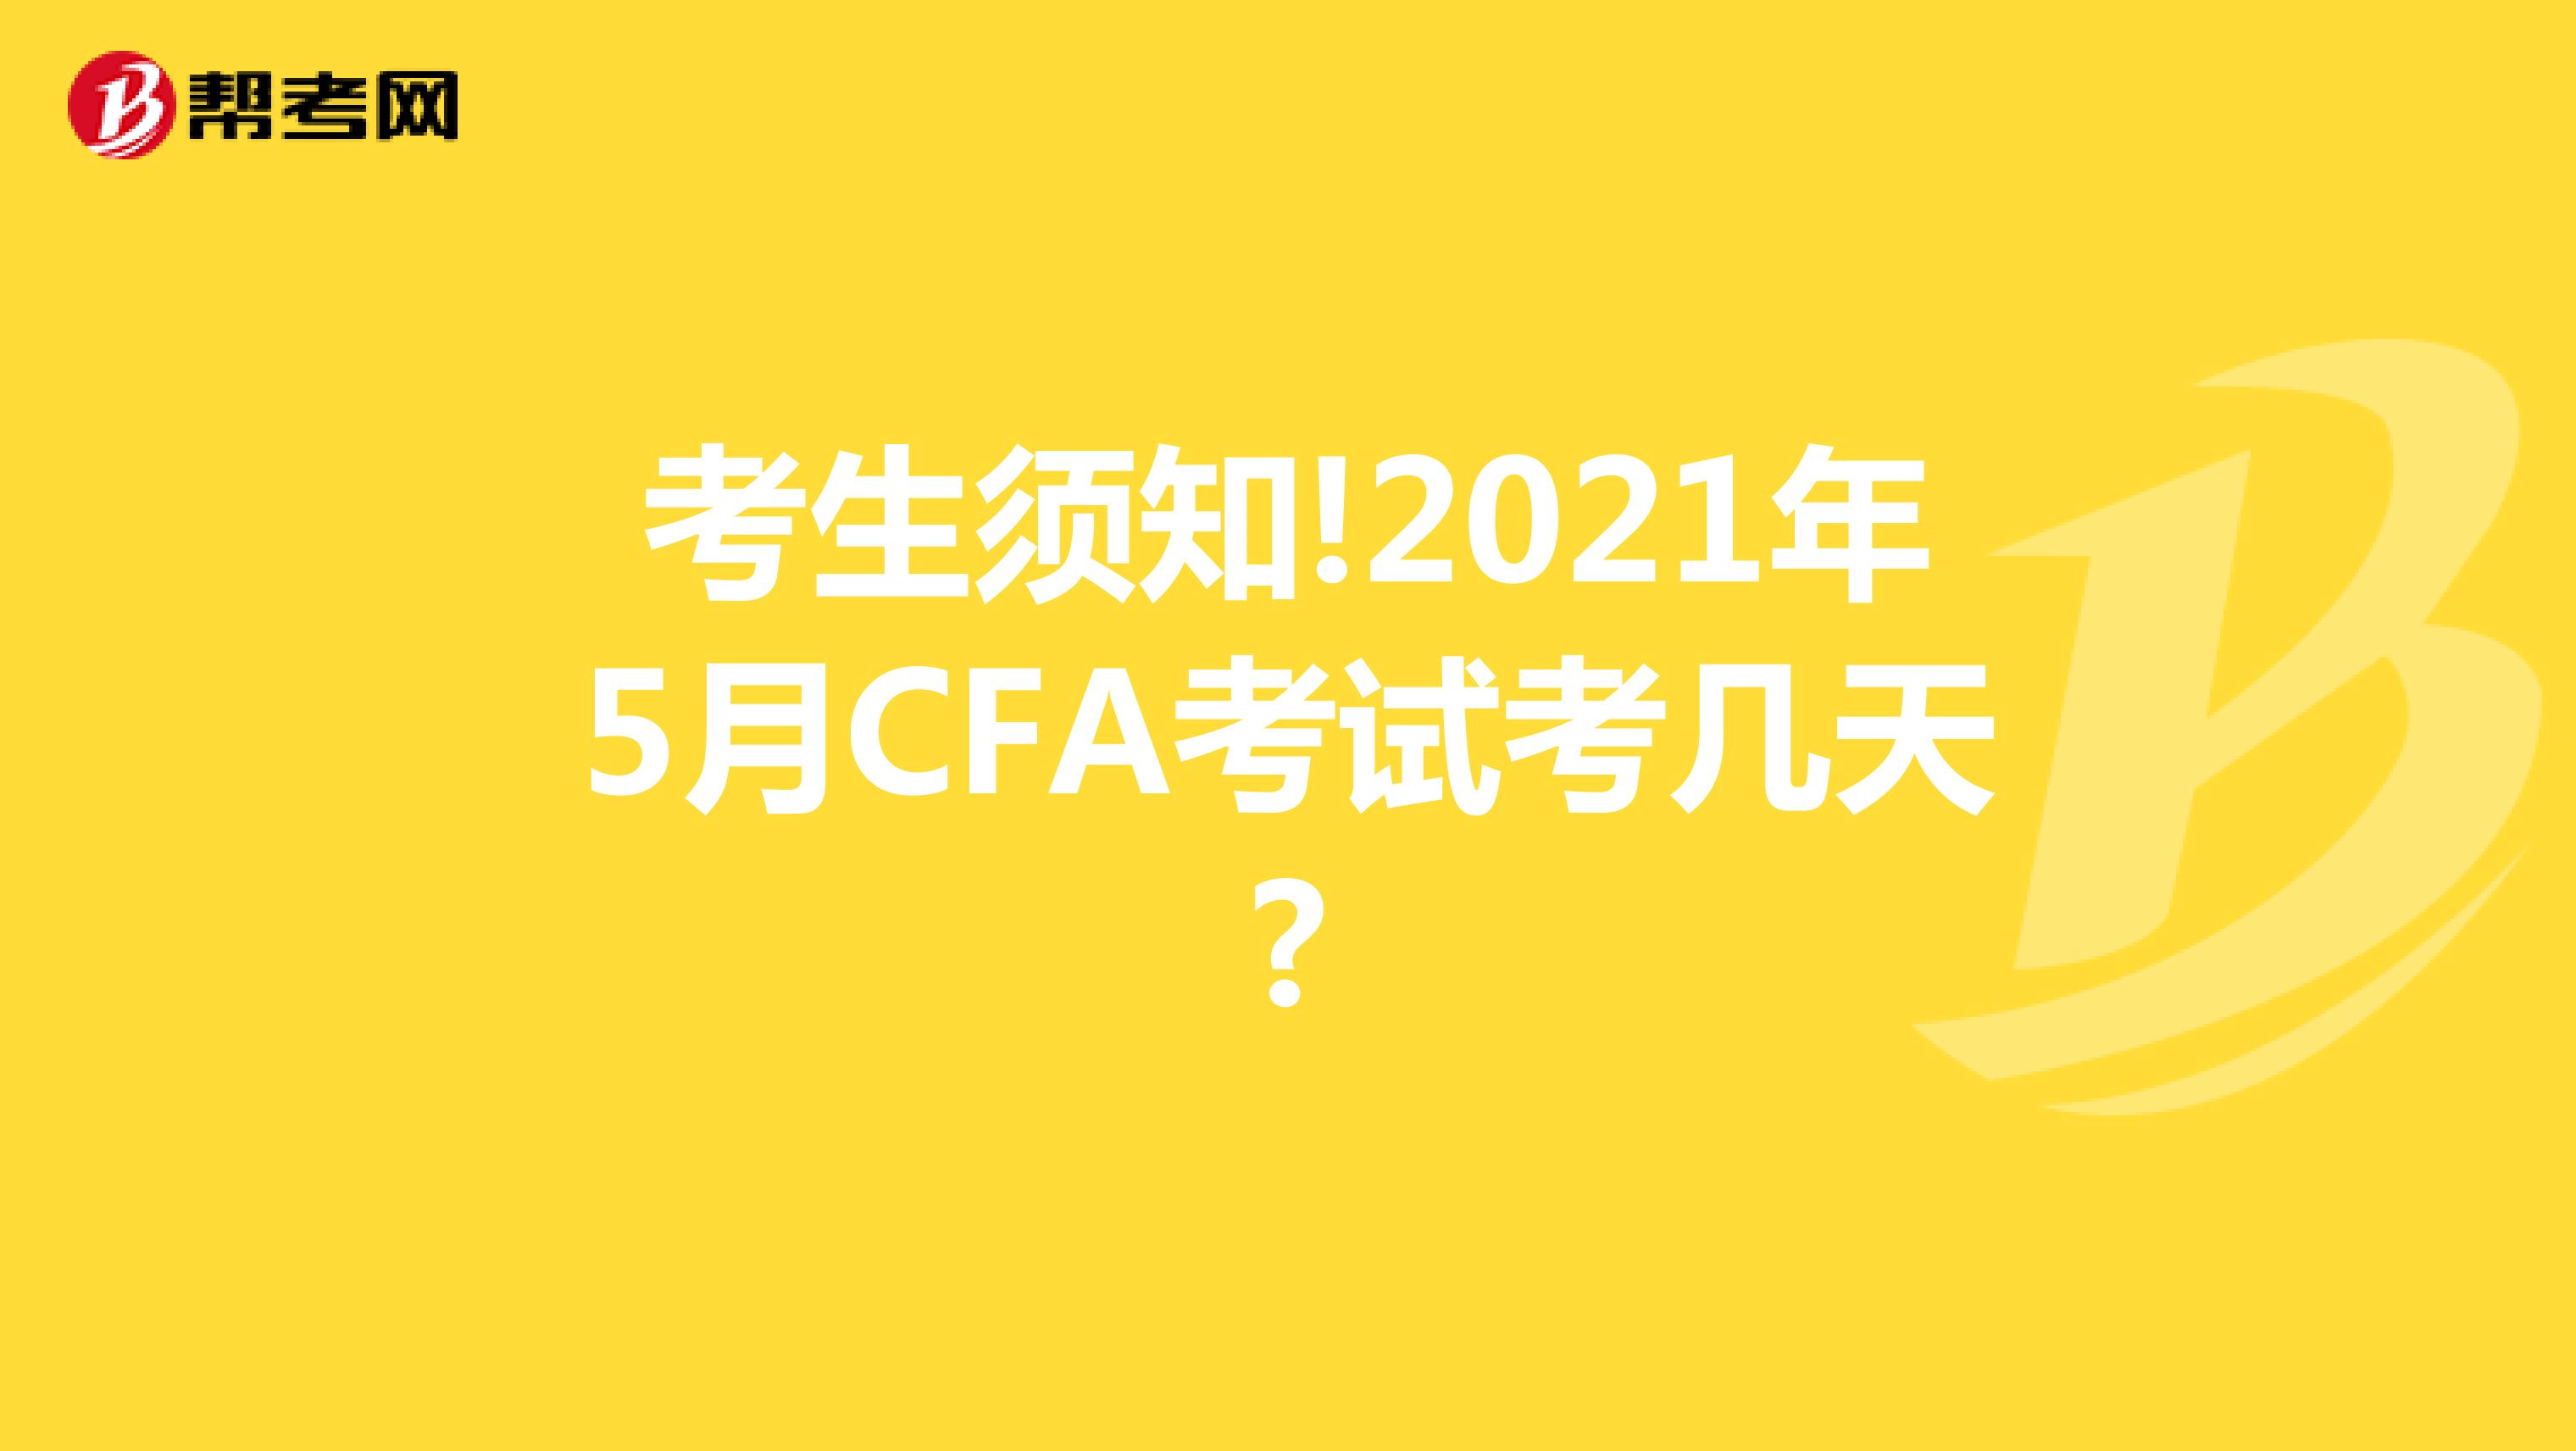 考生须知!2021年5月CFA考试考几天?